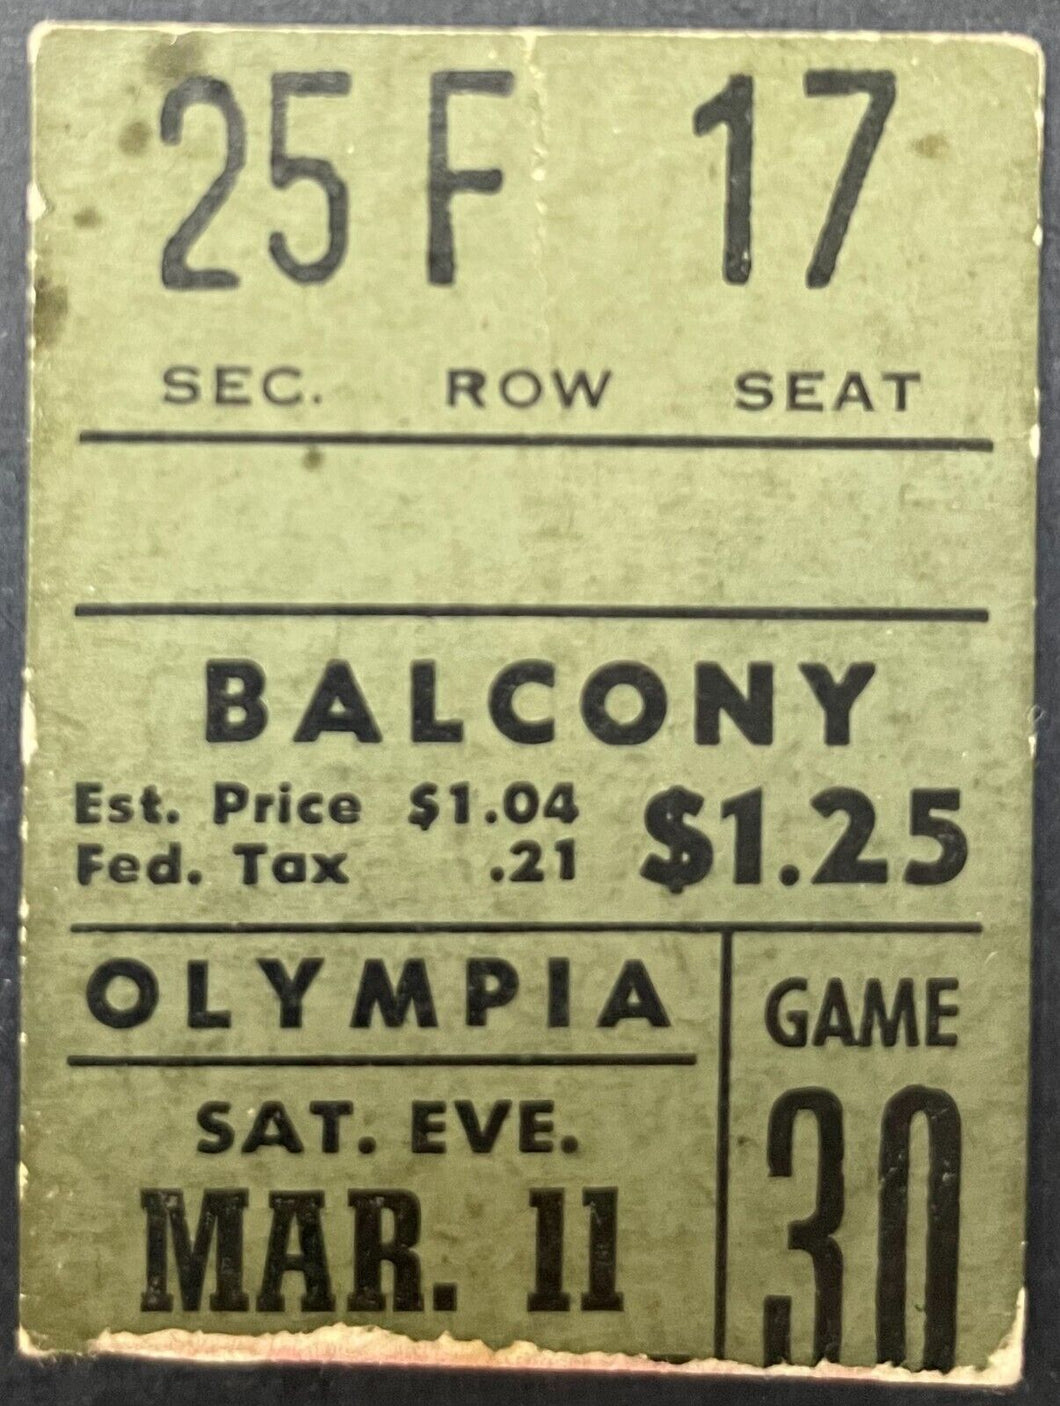 Mar 1959 Olympia Stadium Detroit Red Wings Ticket Stub NHL Hockey Gordie Howe